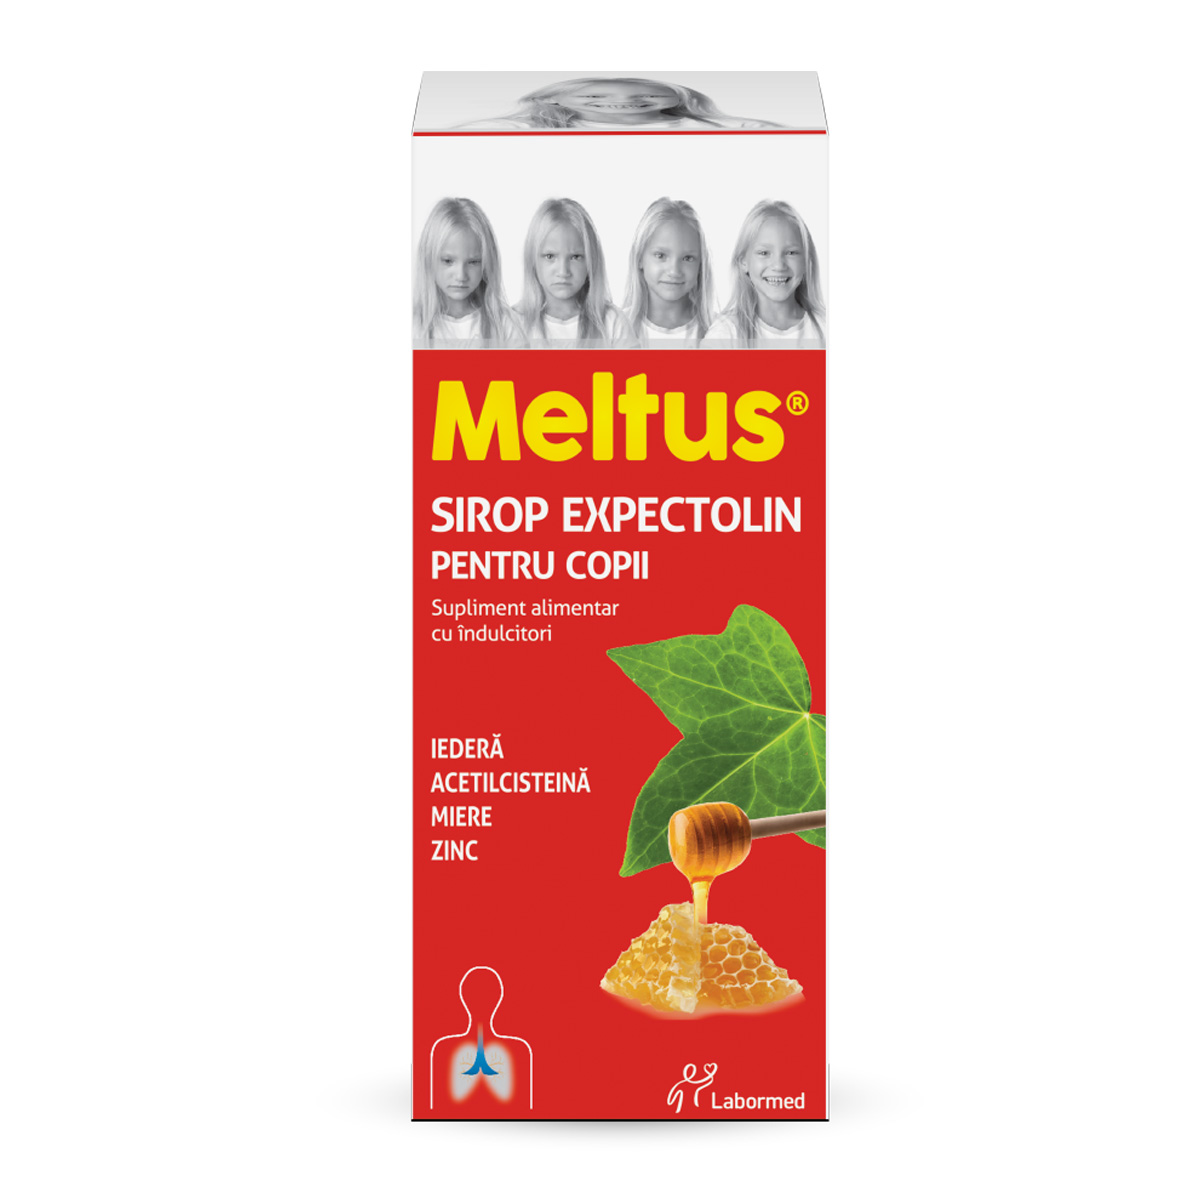 Meltus Expectolin pentru copii sirop cu miere, iedera, zinc, acetilcisteina, 100 ml, Labormed